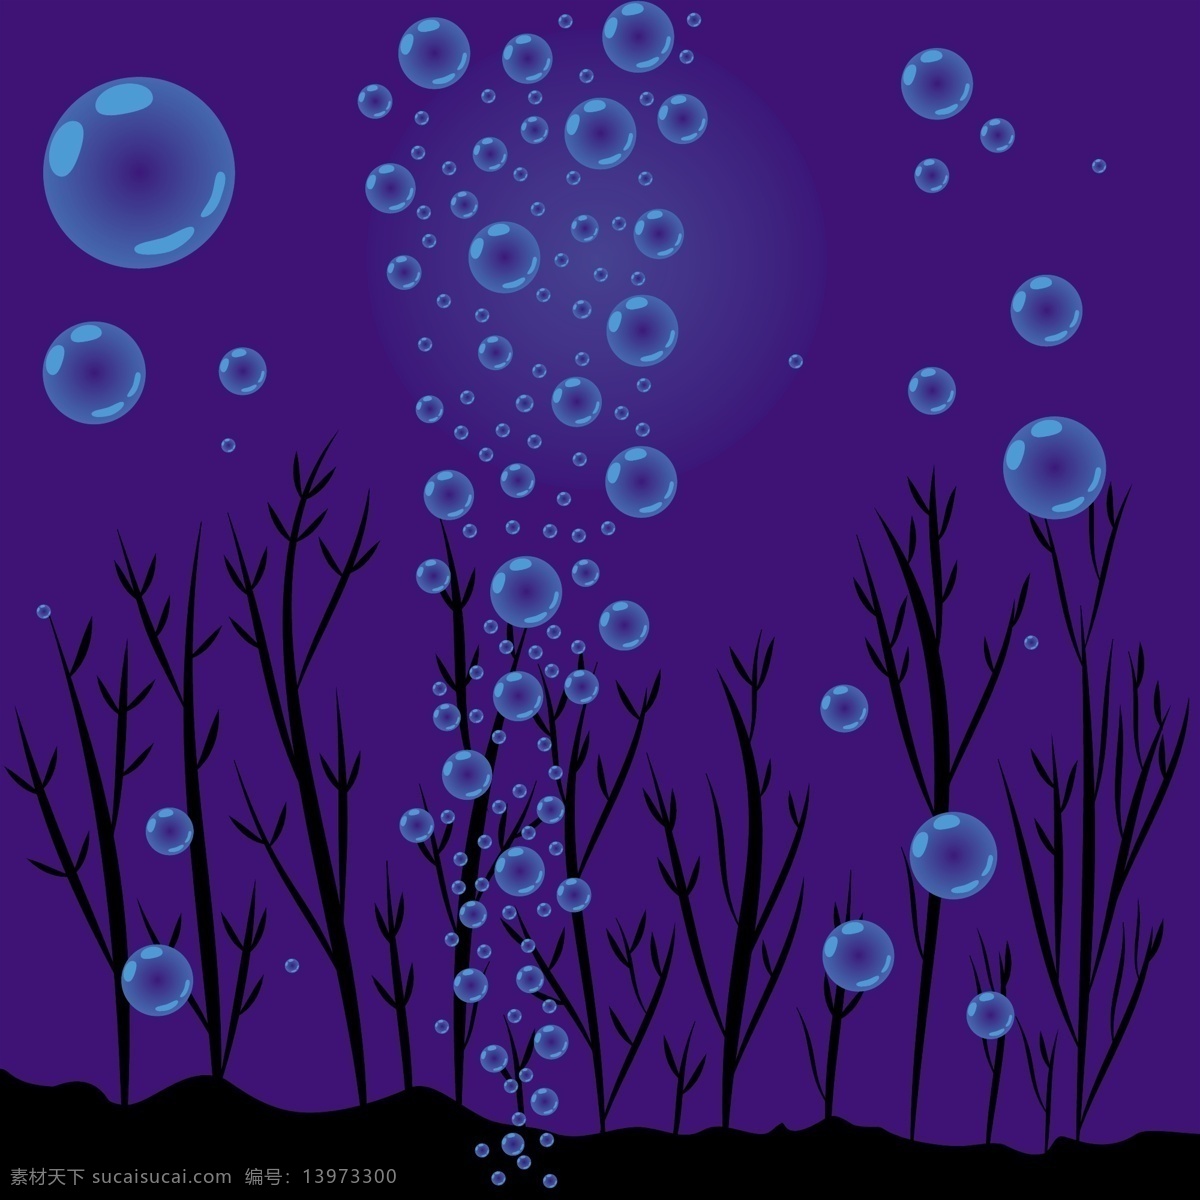 蓝色 水下 气泡 矢量 背景 web 高分辨率 海藻 接口 蓝色的 免费 泡沫 病 媒 生物 时尚 原始的 高质量 图形 质量 新鲜的 设计新的 ui元素 hd 元素 详细的 人工智能 摘要 深 psd源文件